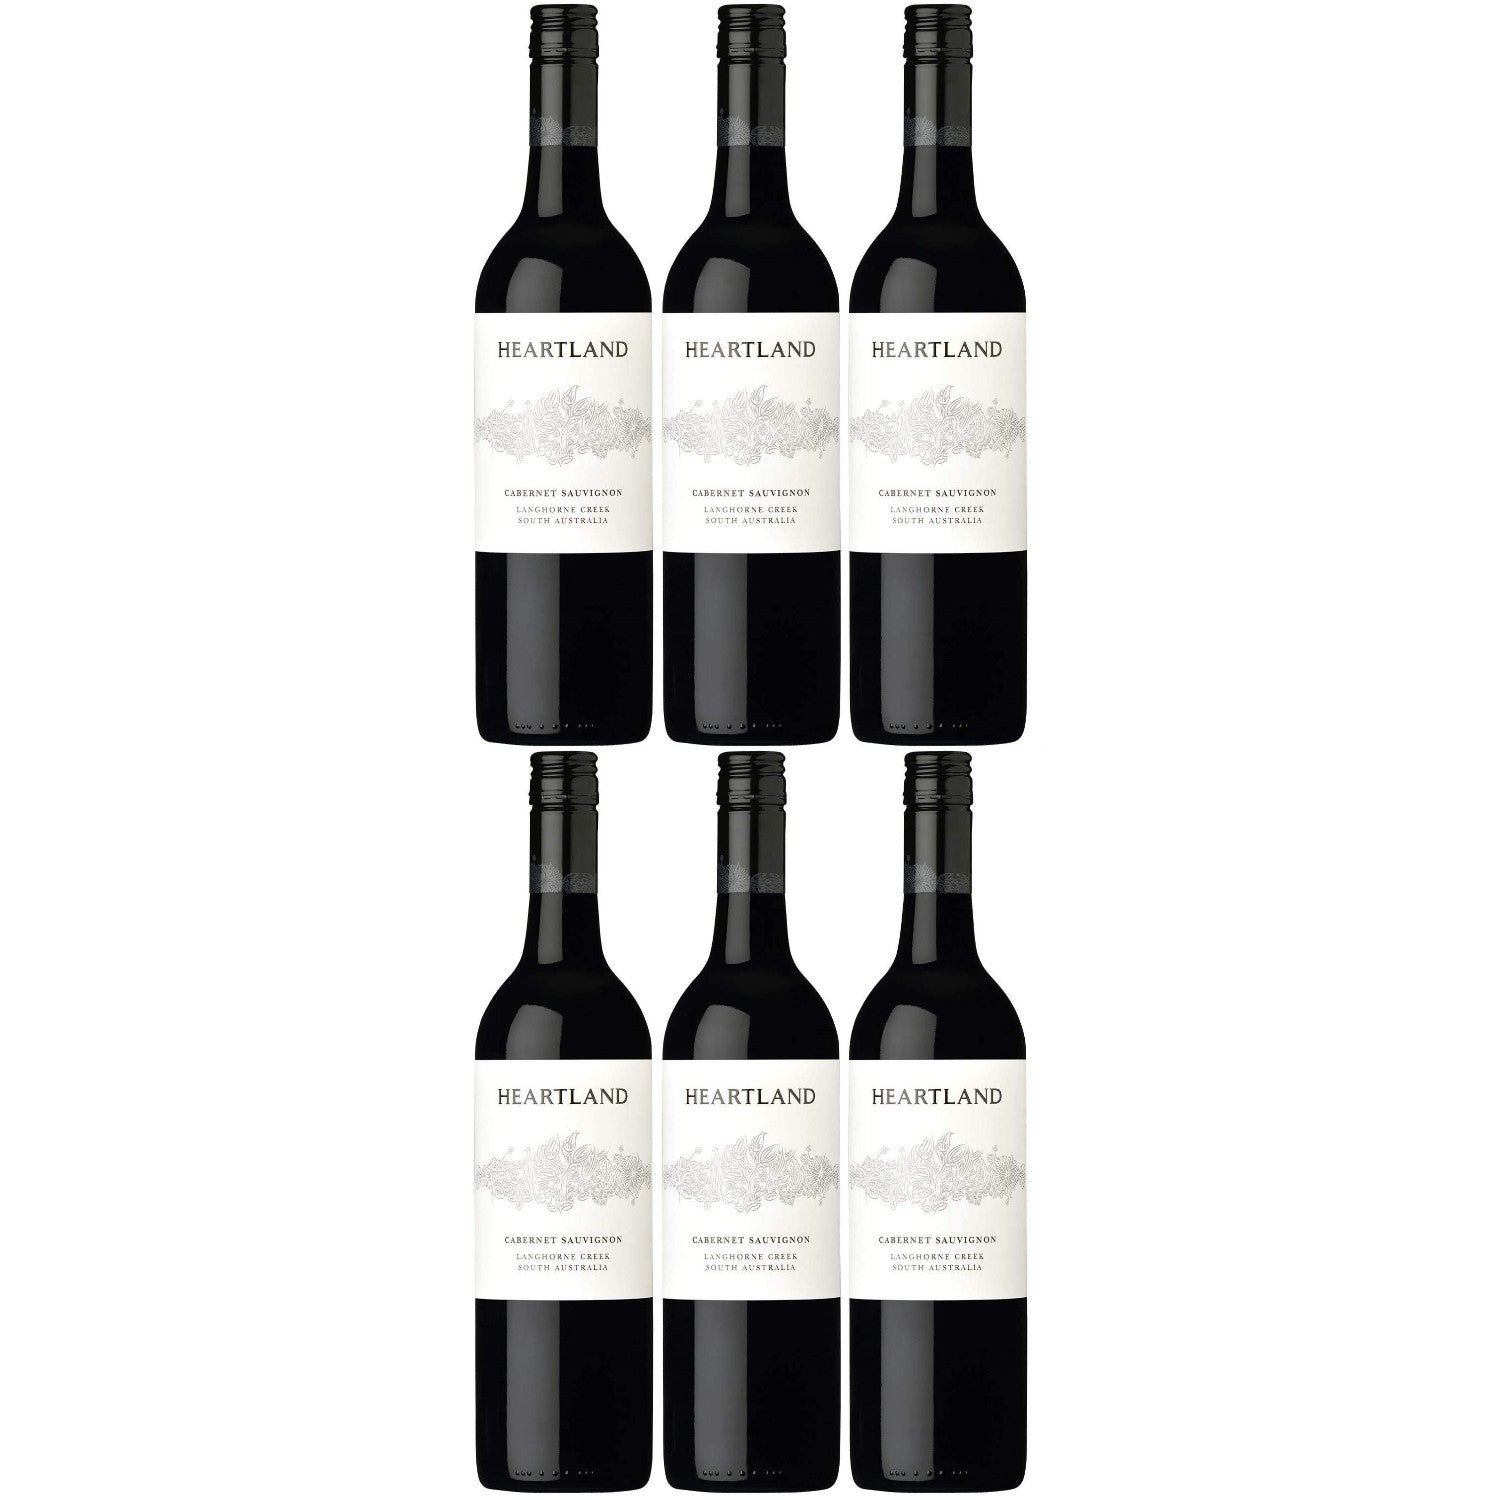 Heartland Cabernet Sauvignon Langhorne Creek Rotwein veganer Wein trocken Australien (6 x 0.75l) - Versanel -